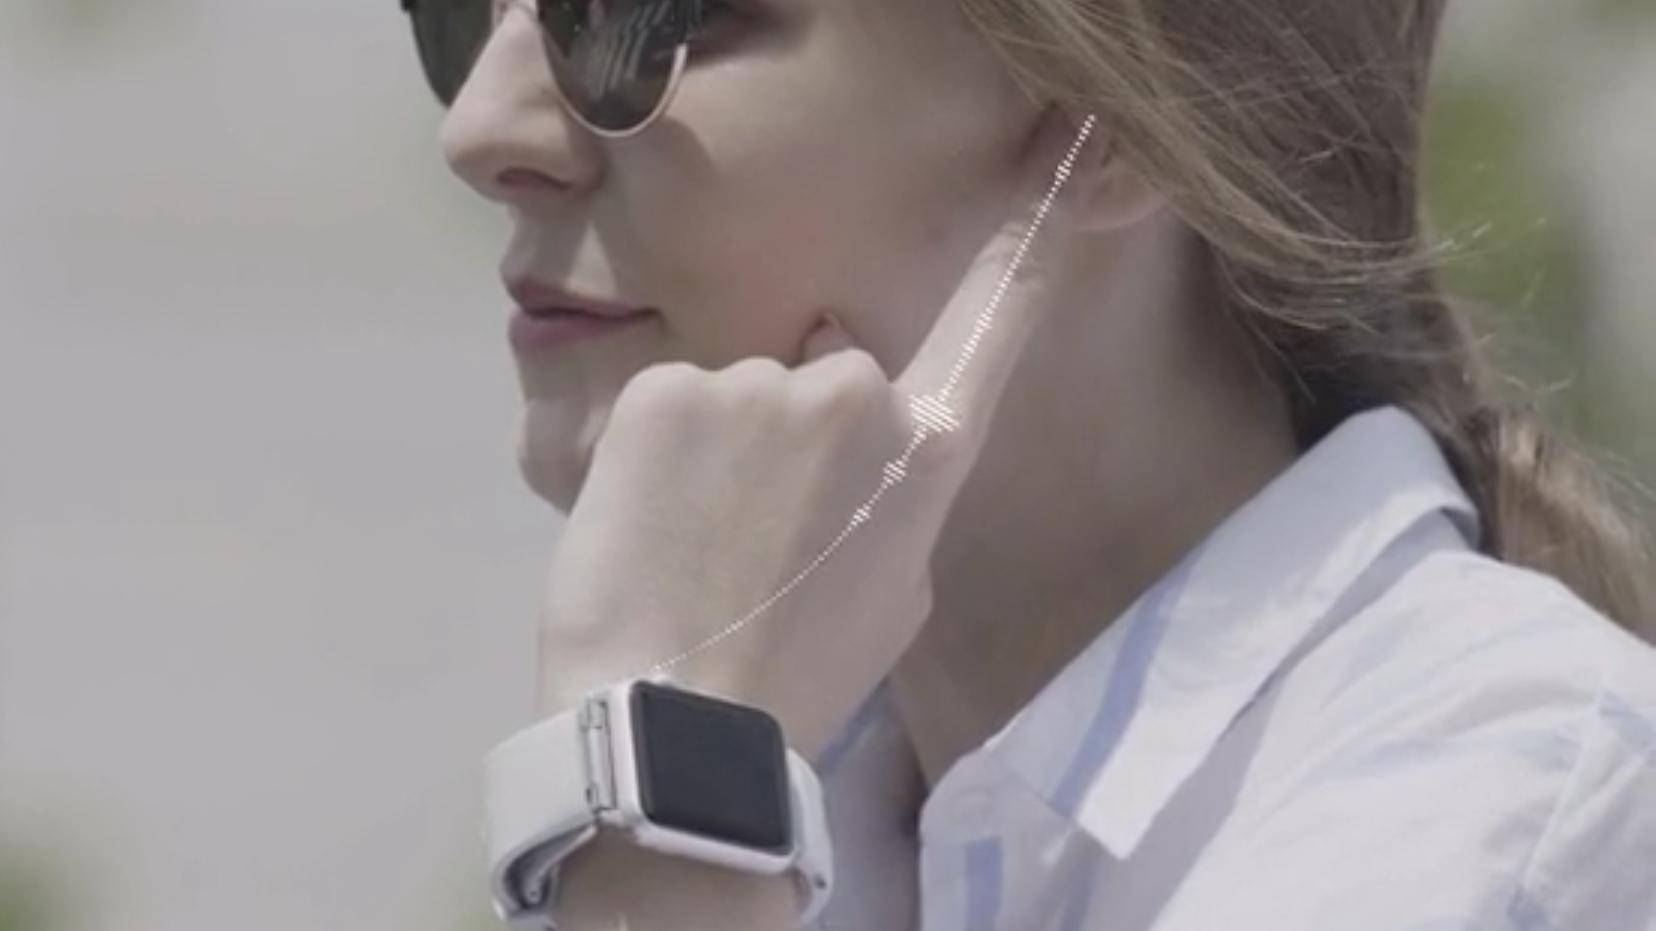 Dette Kickstarter-produktet lar deg bruke hånden som telefon